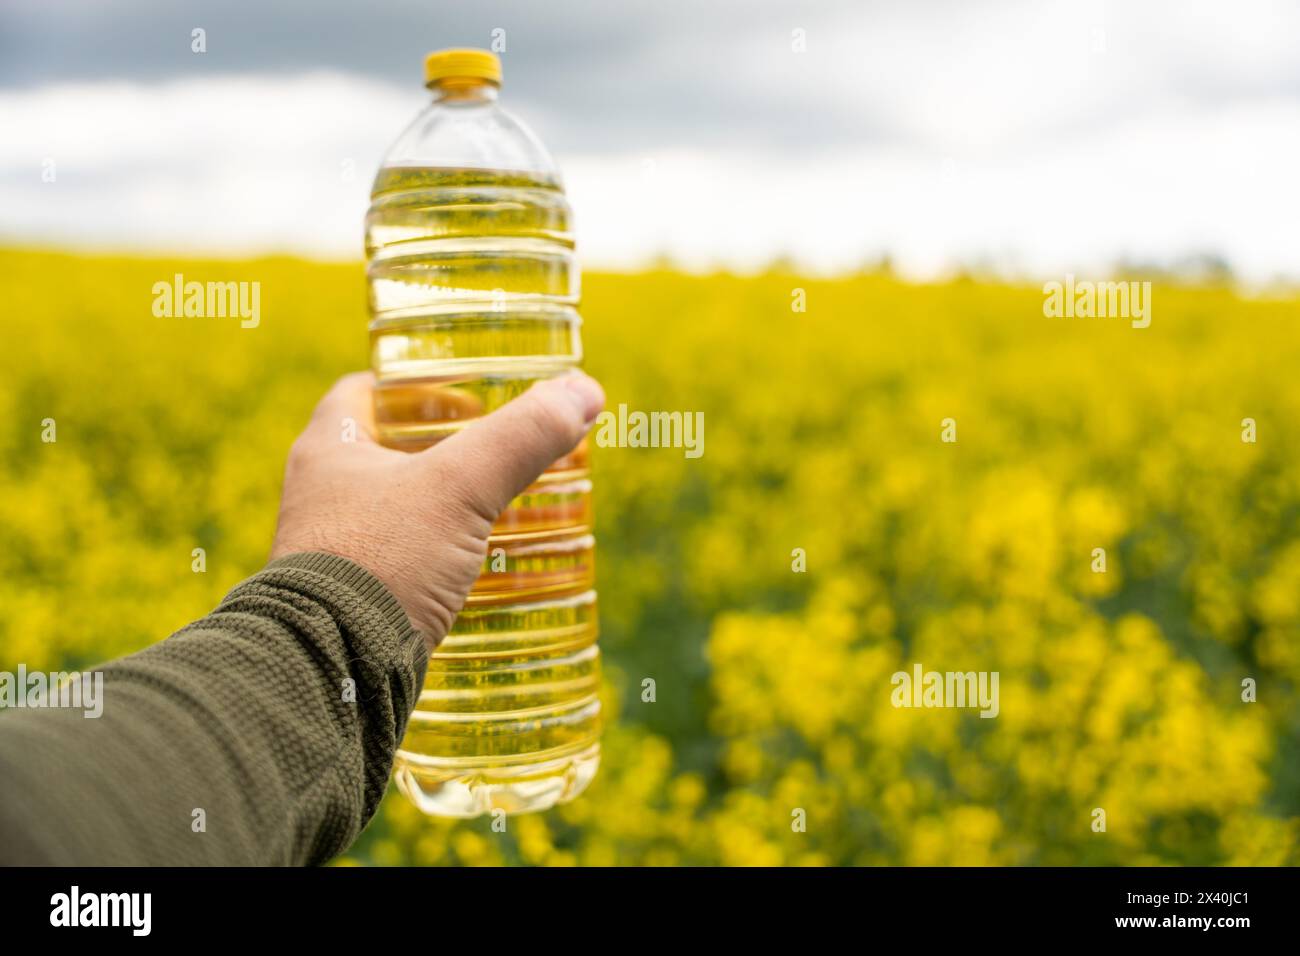 Une bouteille d'huile de colza dans une main sur le fond d'un champ de colza à floraison jaune. Une bouteille d'huile de colza et des champs de colza en fleurs. Banque D'Images